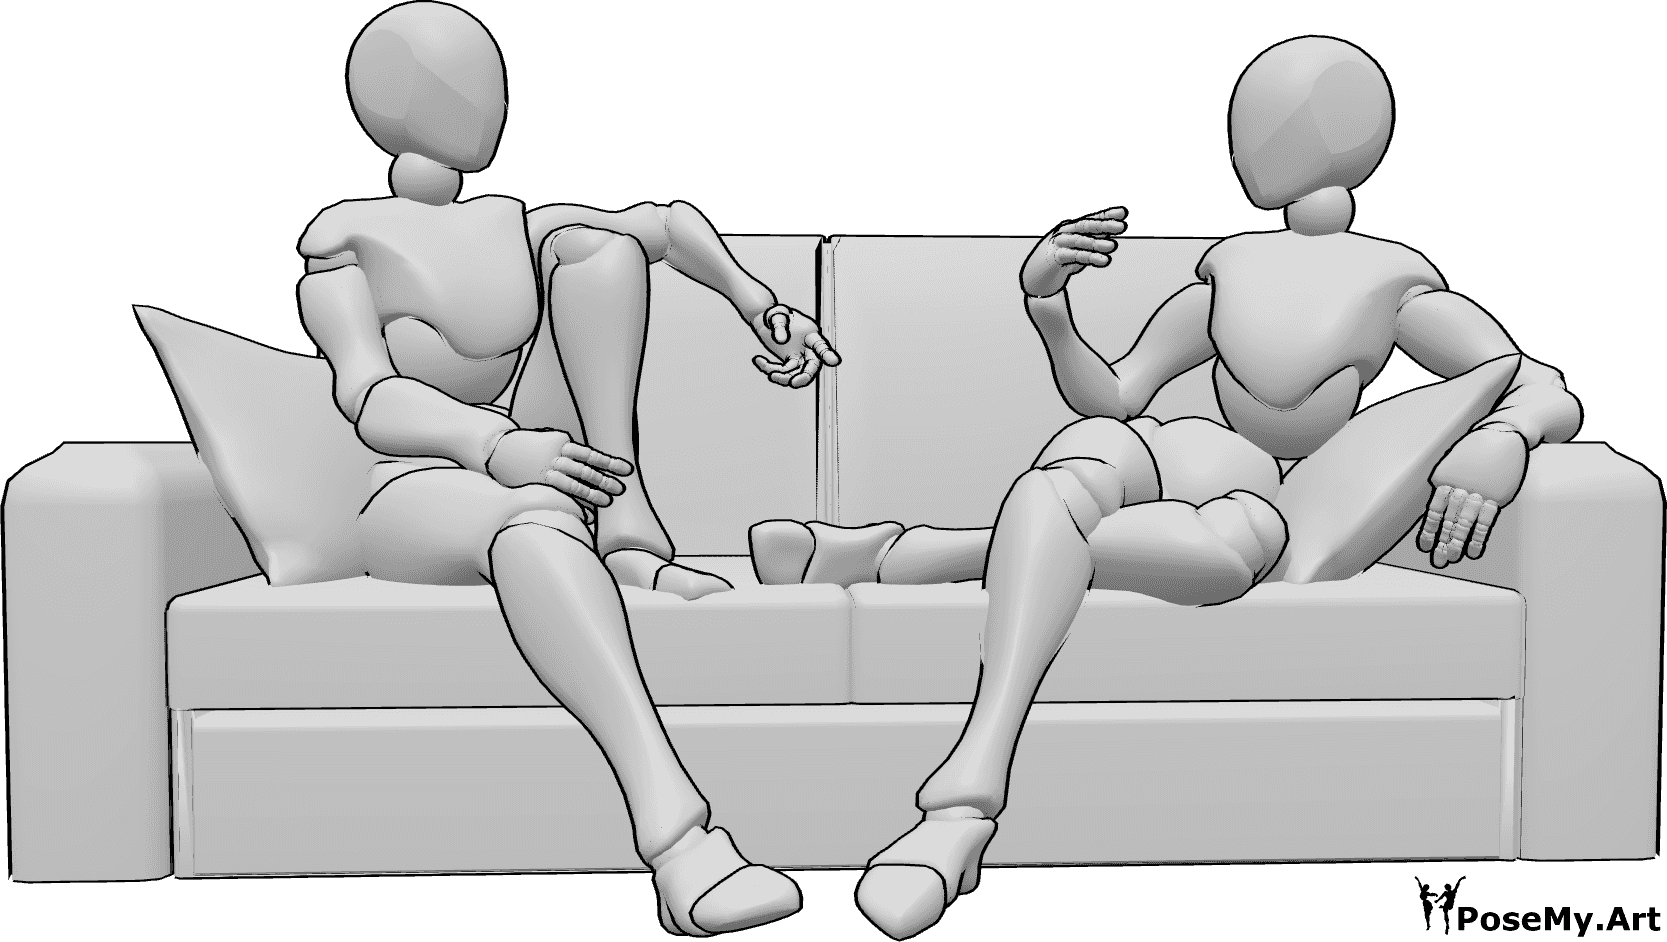 Riferimento alle pose- Due donne in posa seduta - Due donne sono comodamente sedute sul divano e stanno parlando.